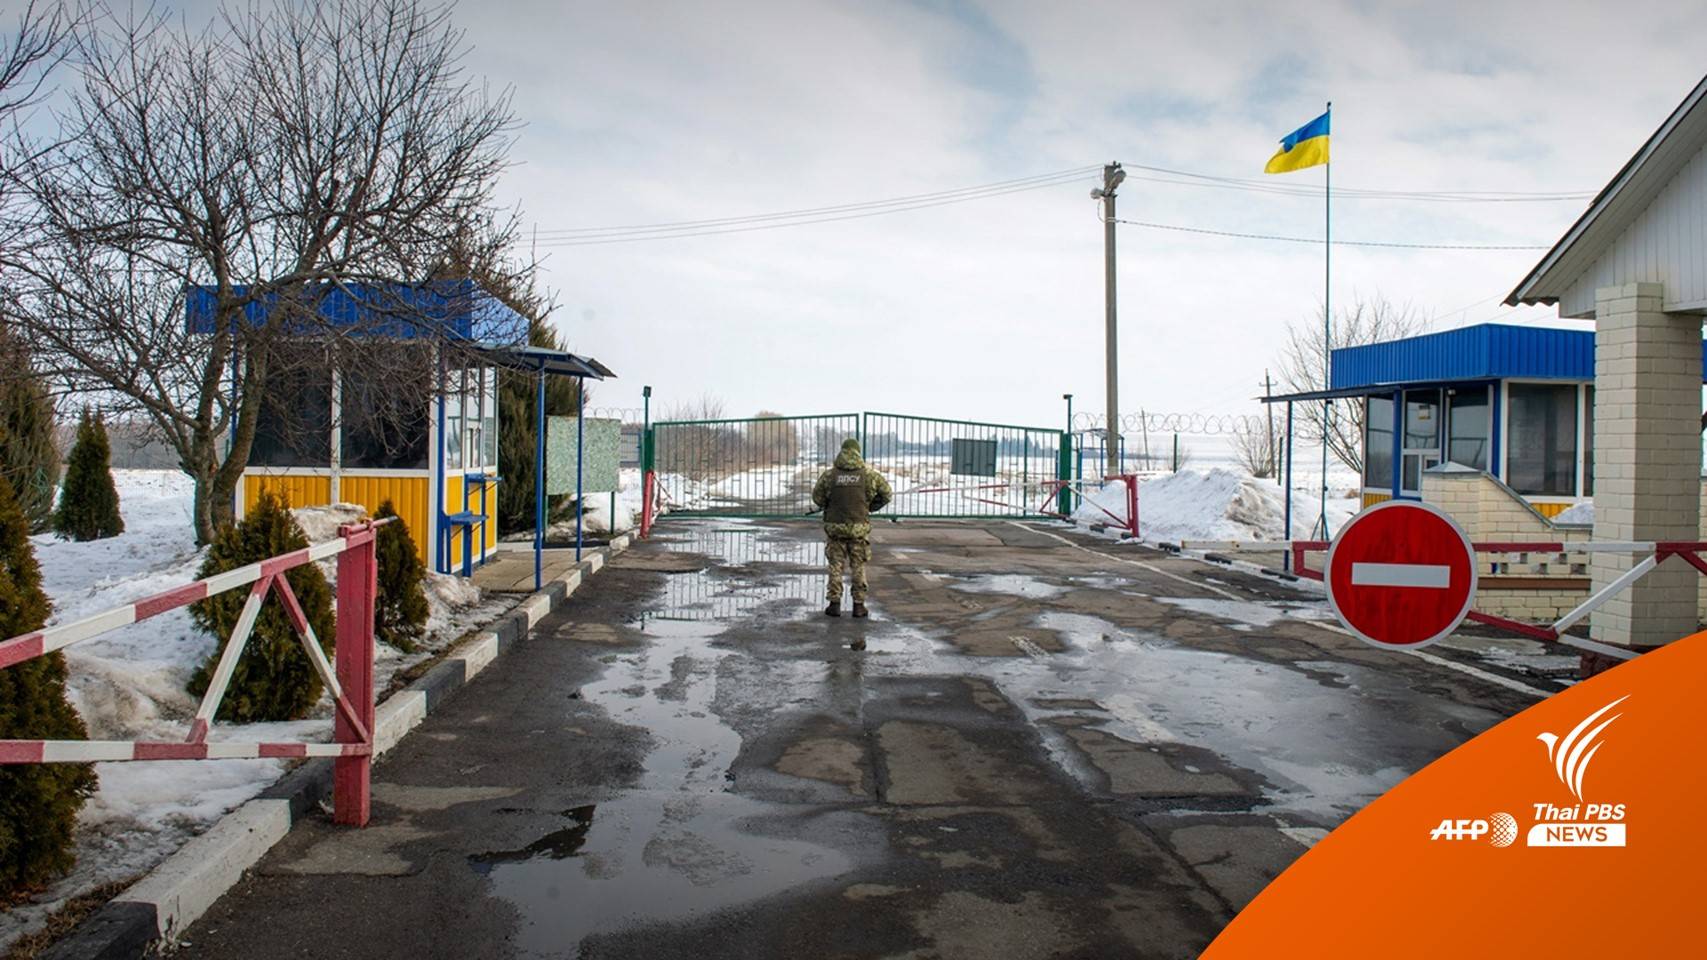 "ยูเครน" เตรียมประกาศ "ภาวะฉุกเฉิน" ทั่วประเทศ